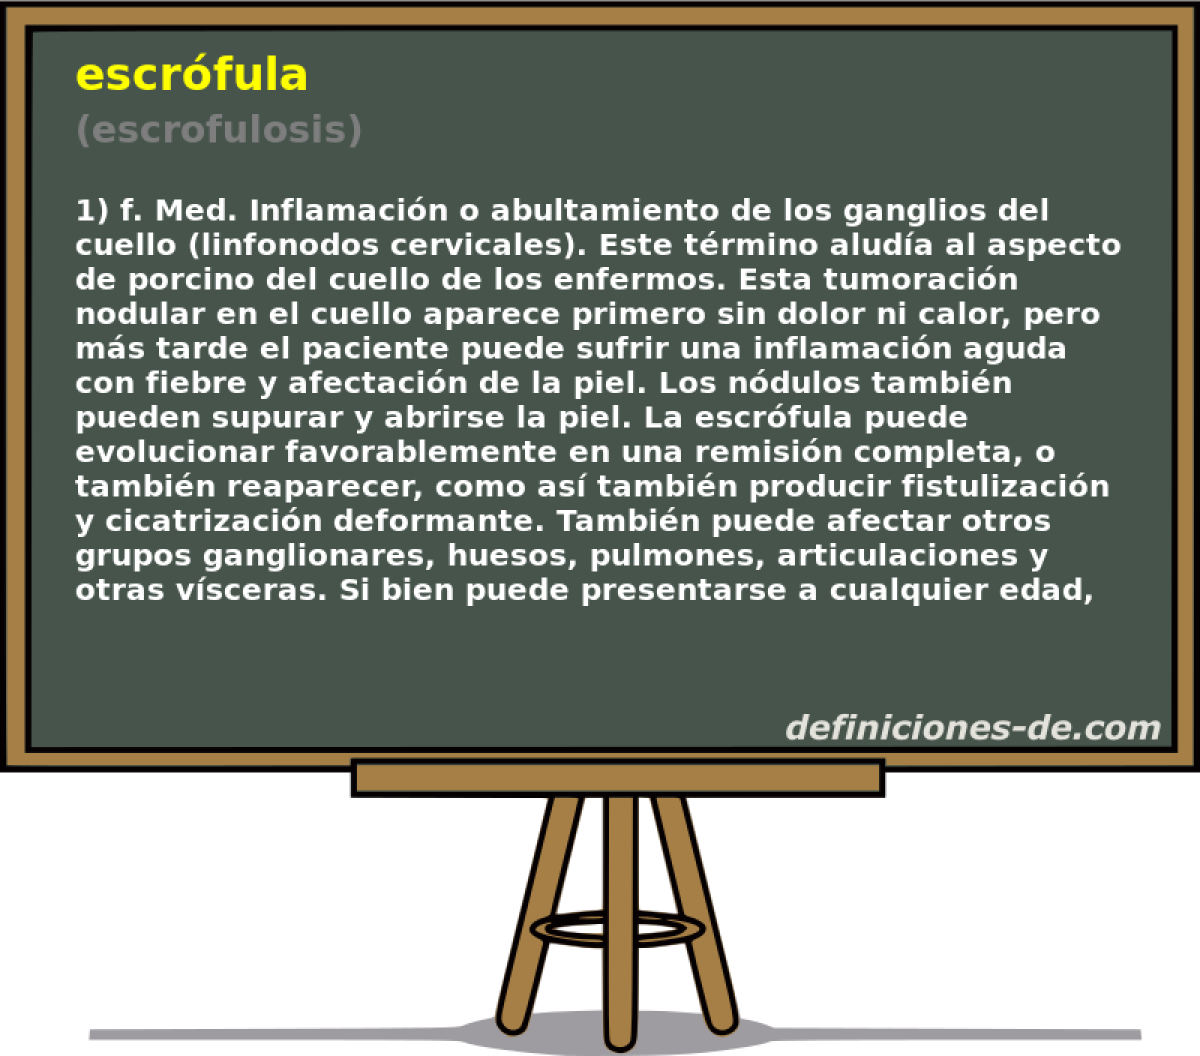 escrfula (escrofulosis)